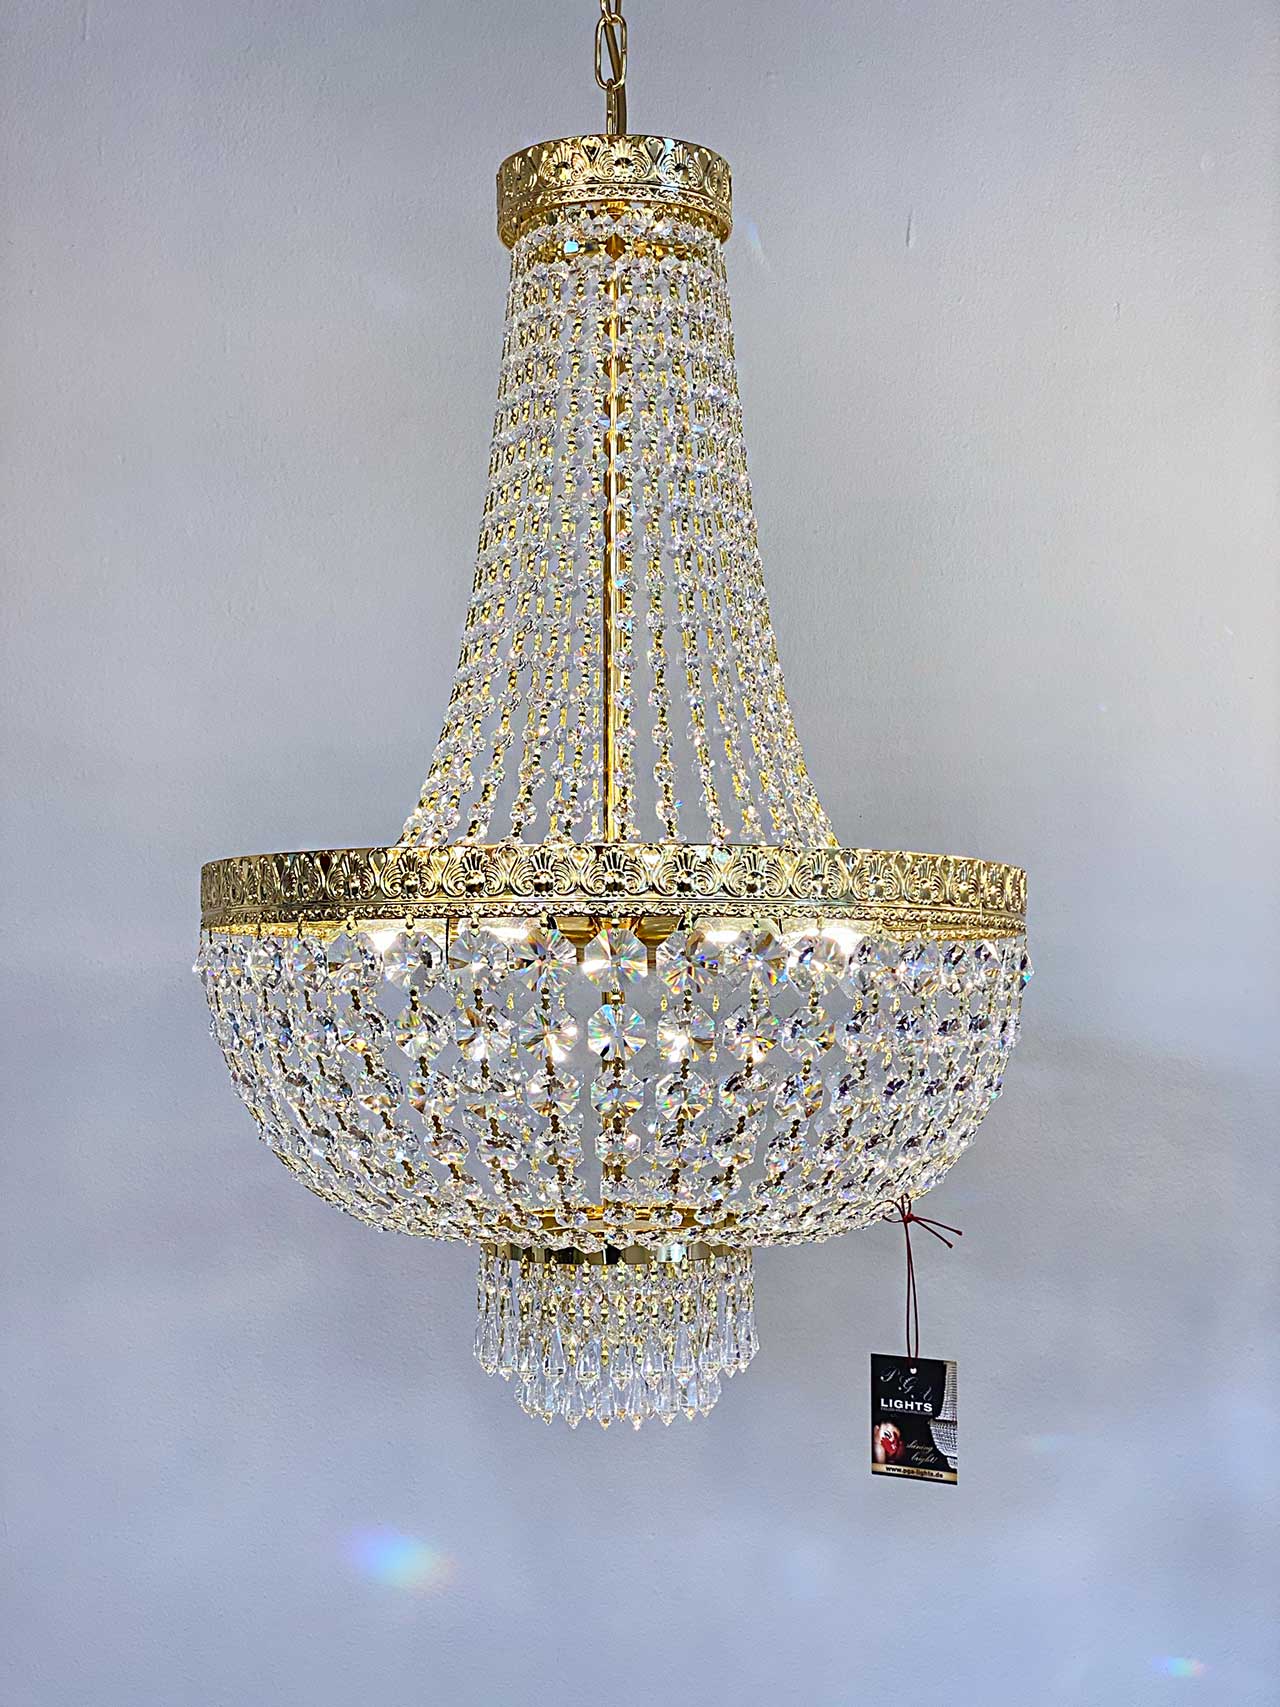 KRISTALL KORBLÜSTER AMSTERDAM Ø45cm Gold gefertigt mit funkelnden Bleikristallen